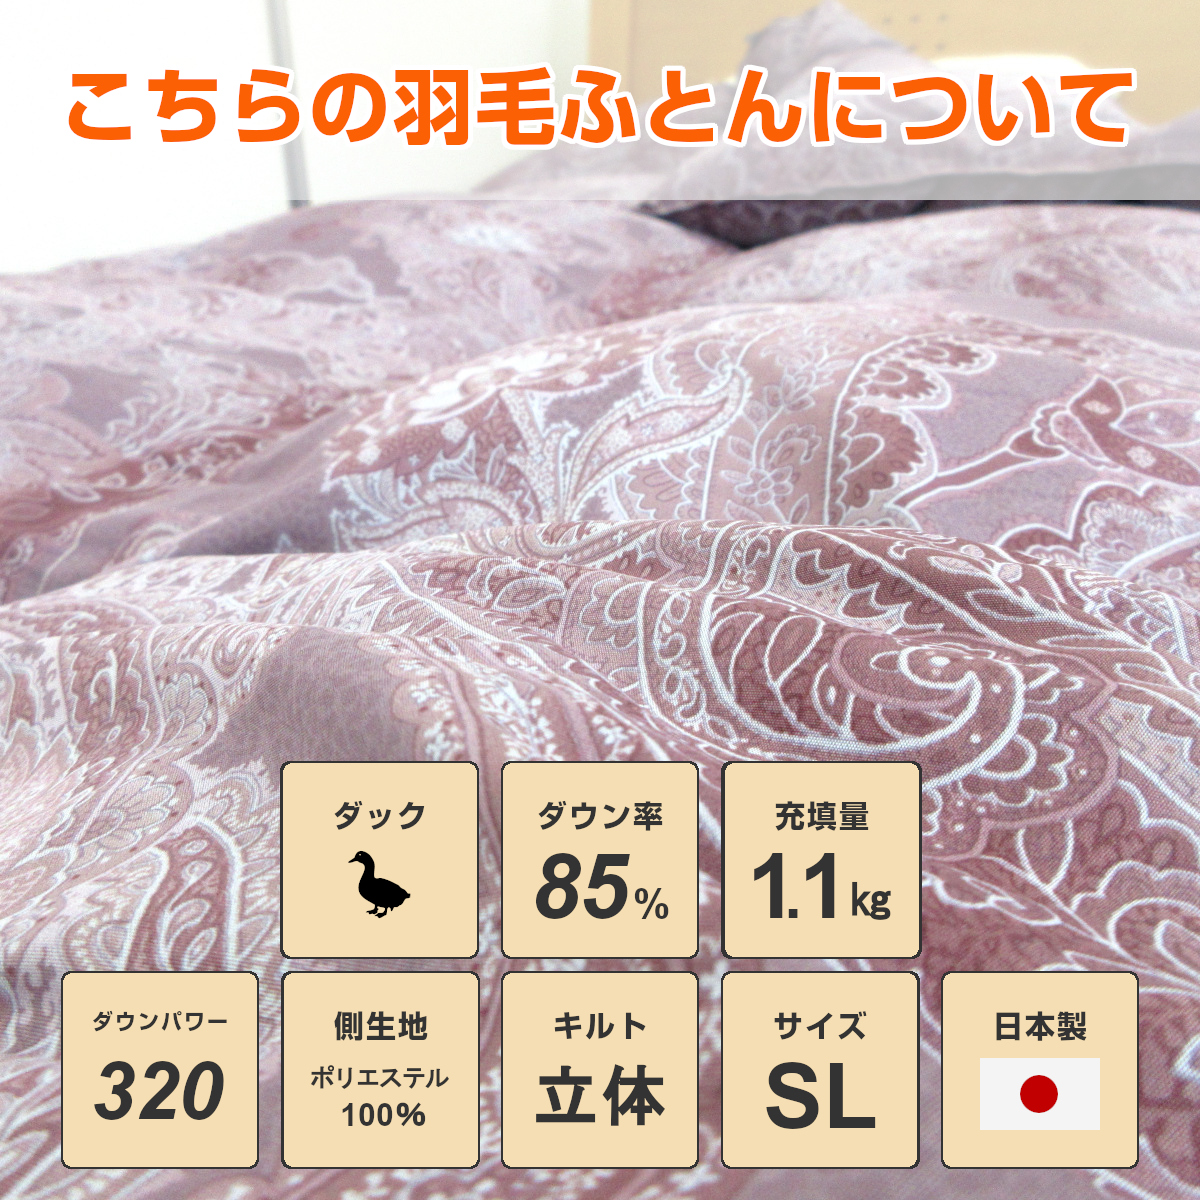 110-797>日本製 シルバーダックダウン85% 羽毛布団 シングル 1.1Kg CIL